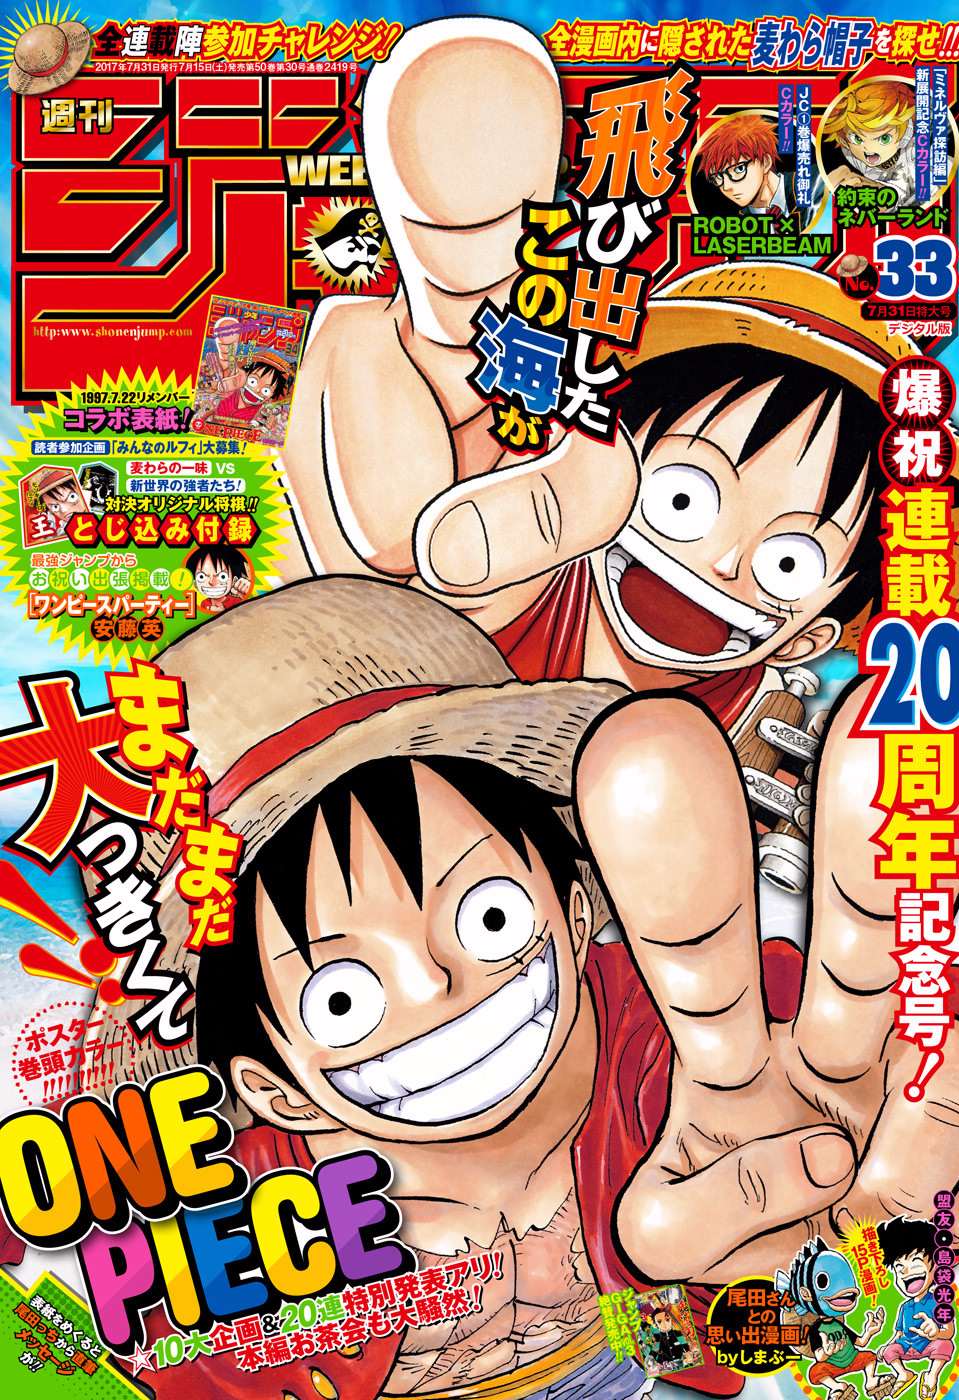 One Piece Manga 2017 2bOLVefe